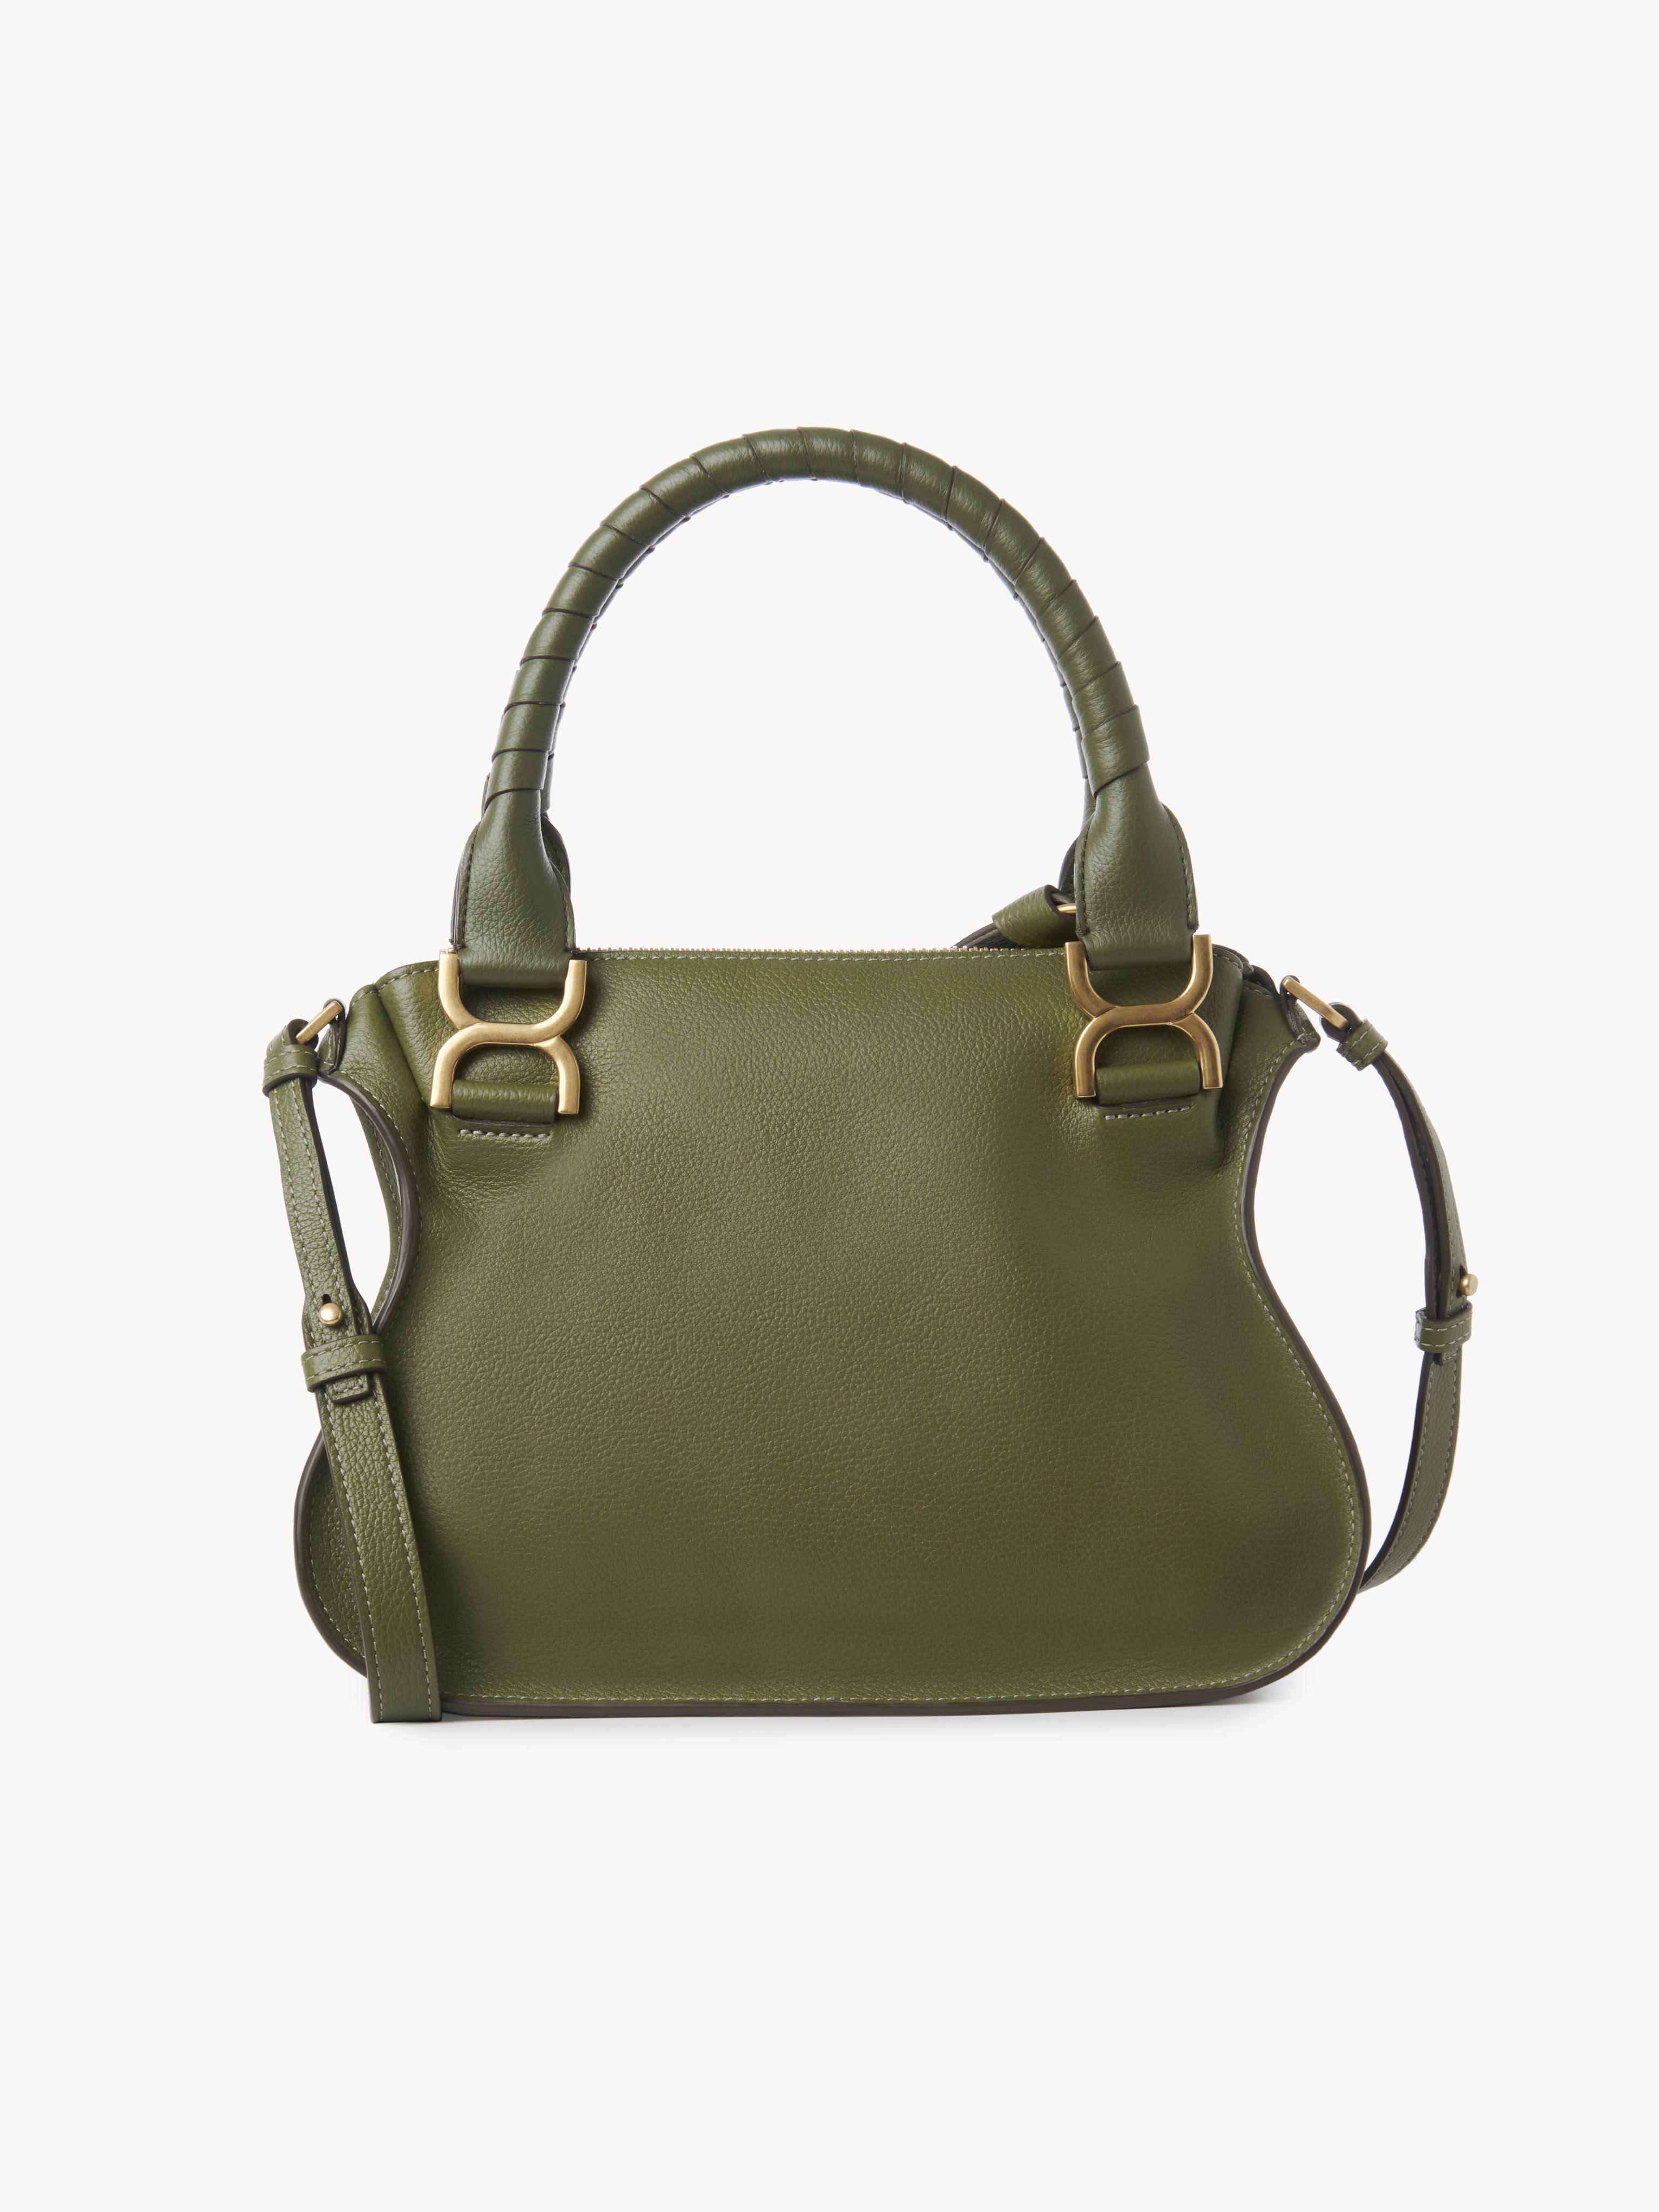 Chloé Marcie Small Double Carry Bag